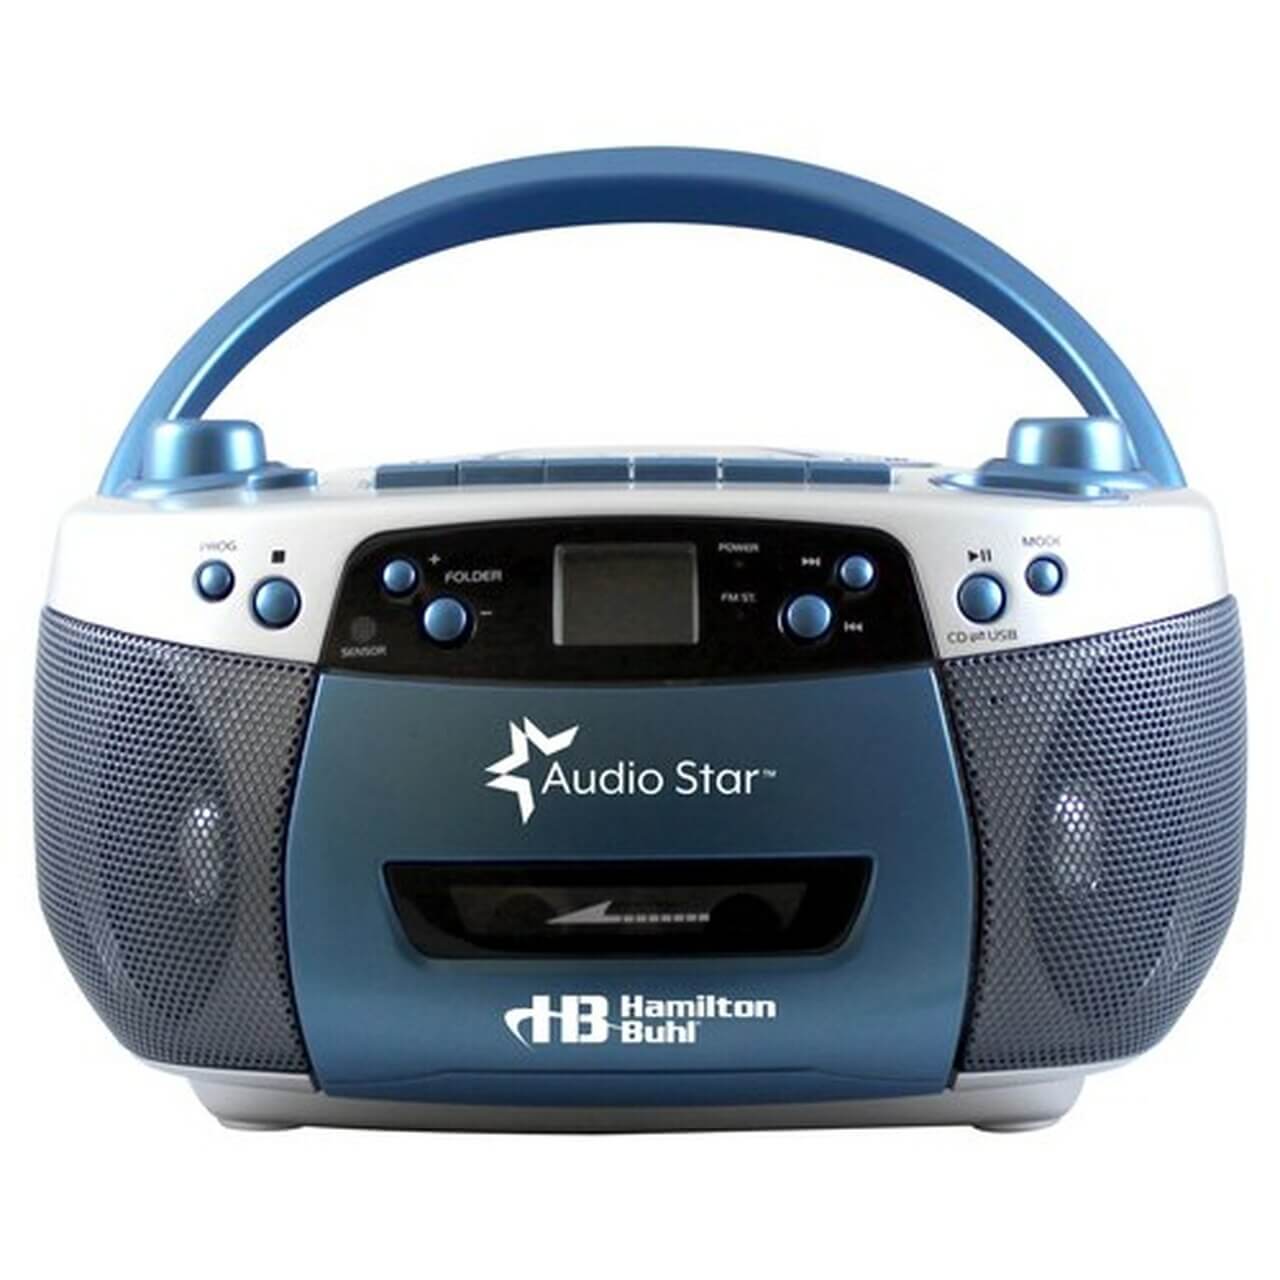 RADIO CASSETTE CON CD / MP3 / USB